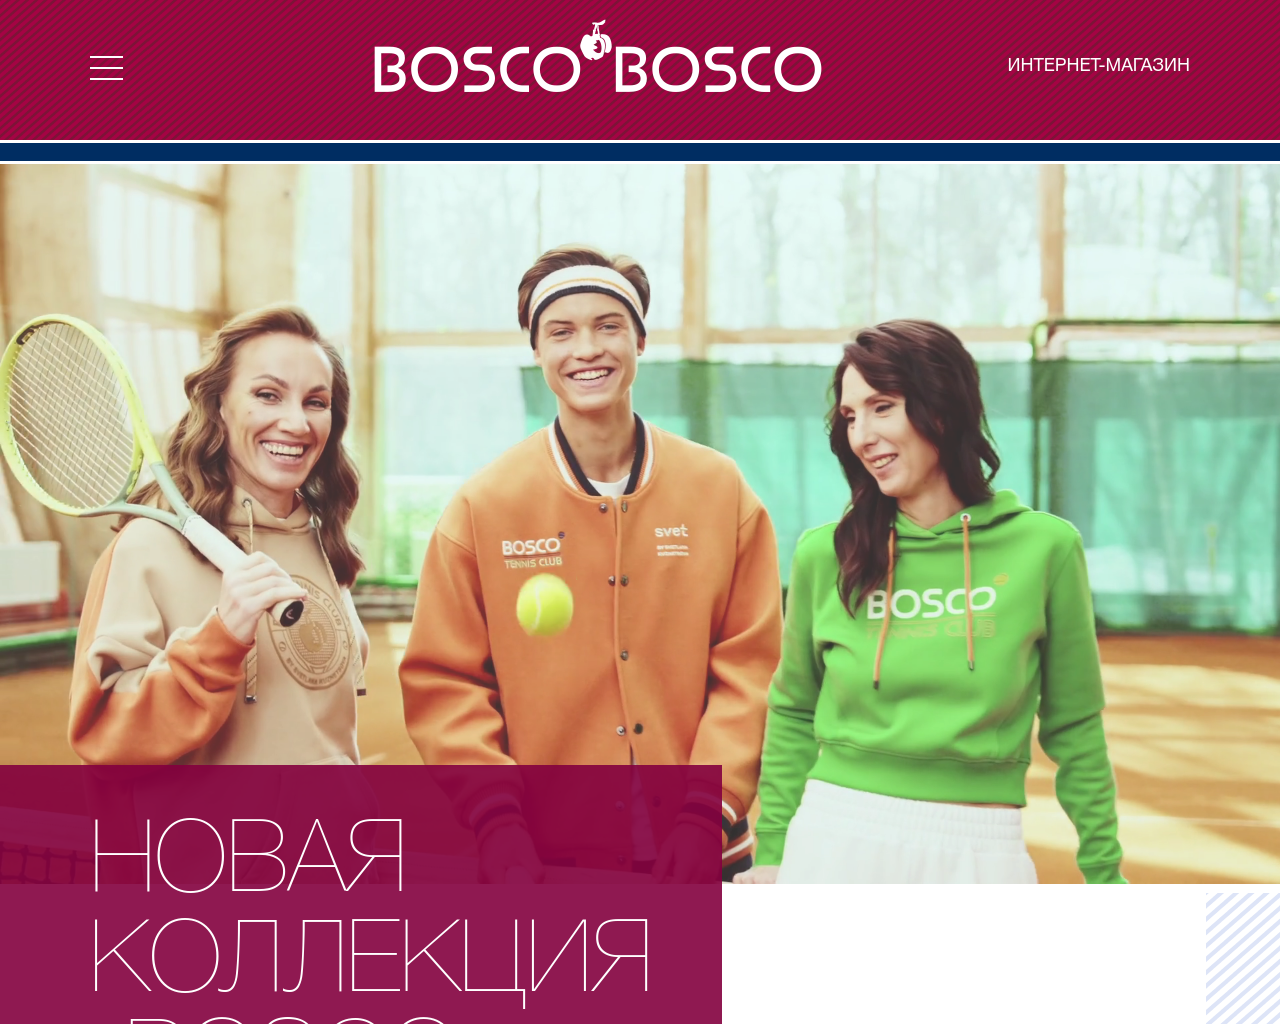 boscosport.ru